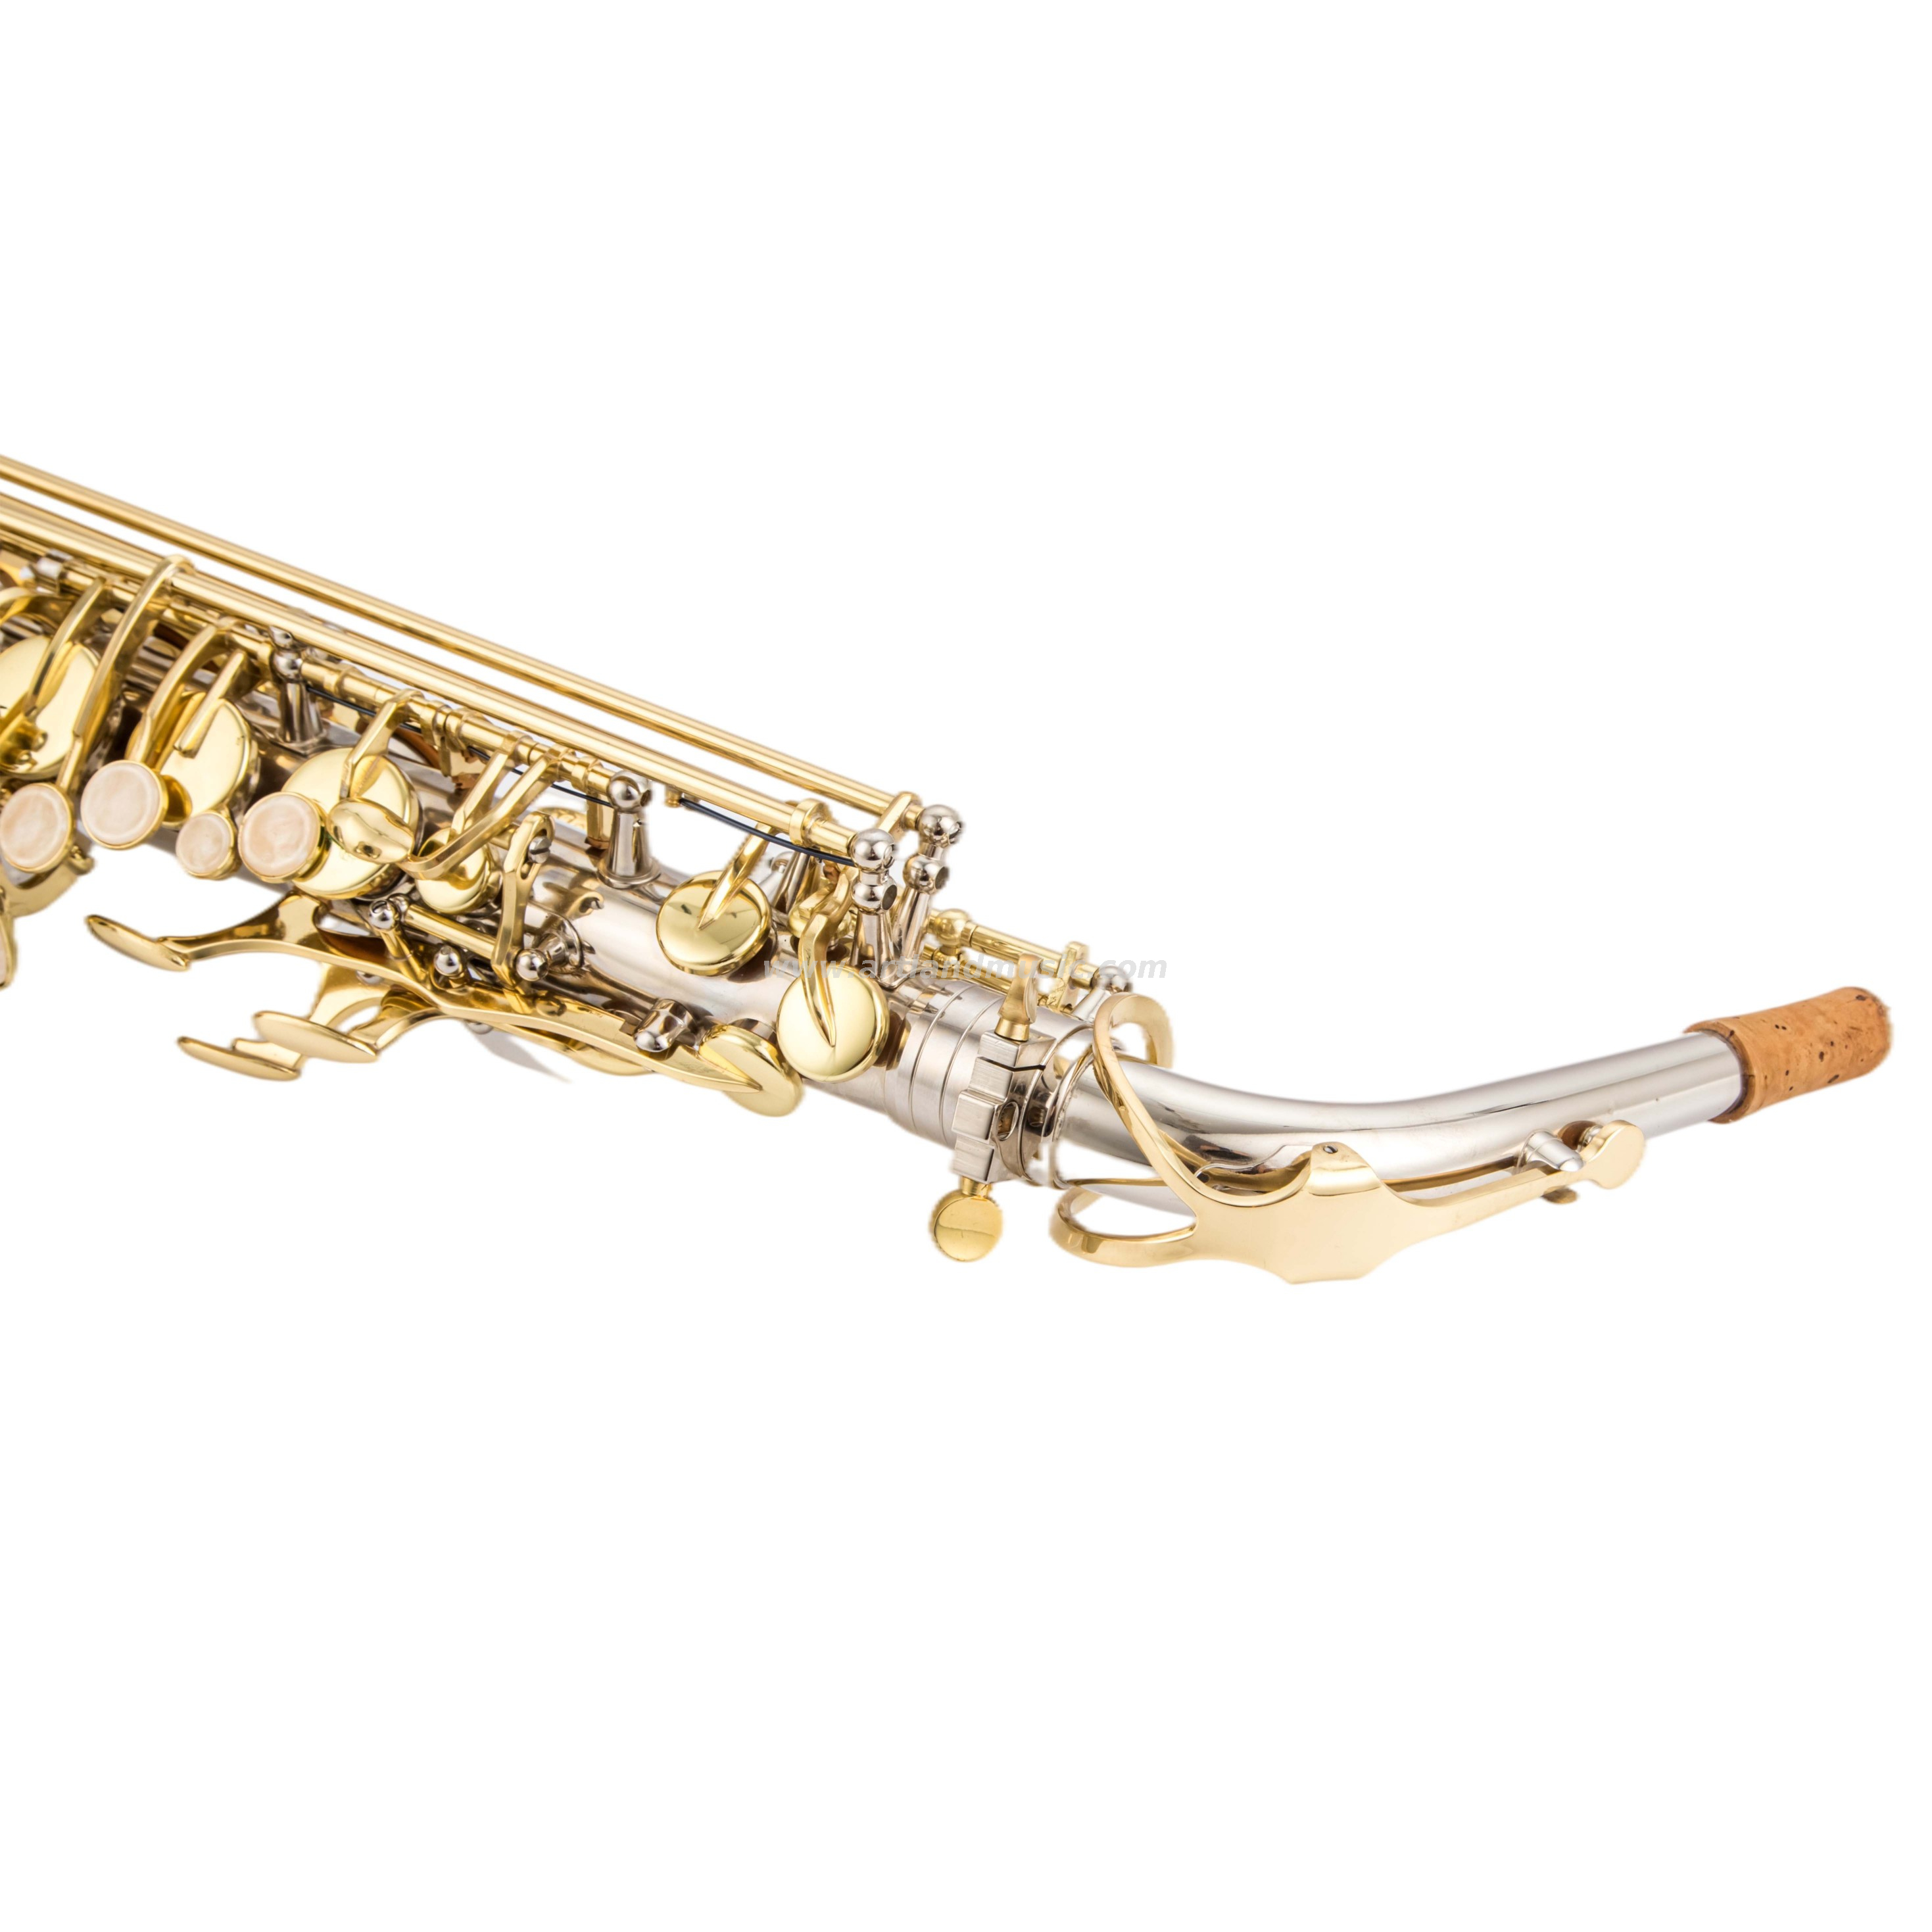 Níquel terminado alto saxofón con llave de oro (AAS5505NL)